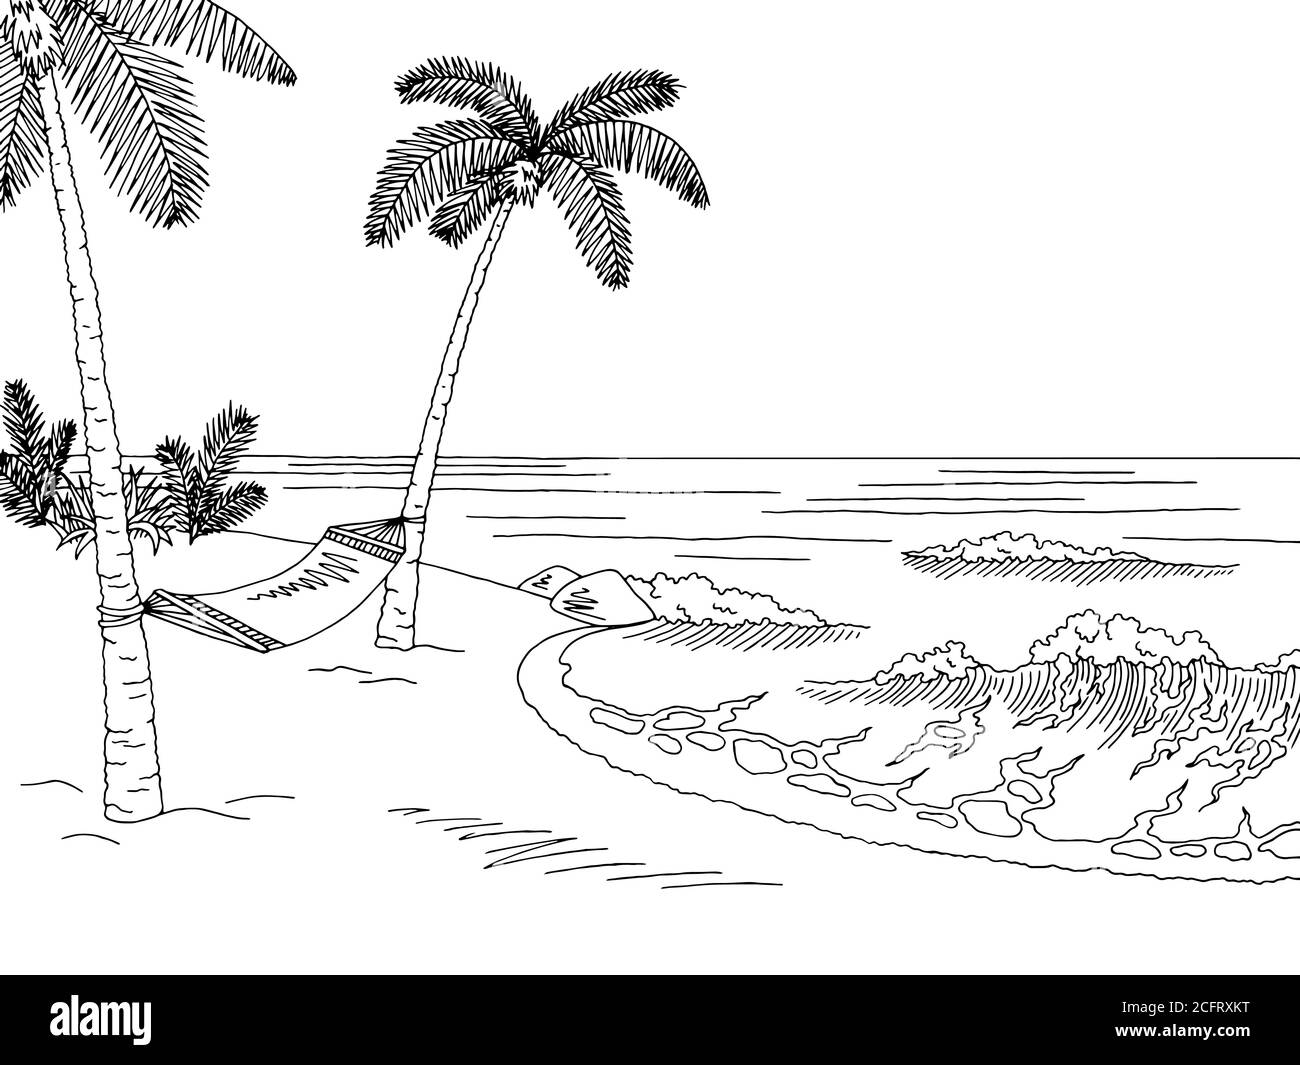 Sea coast hammock graphic black white landscape sketch illustration ...